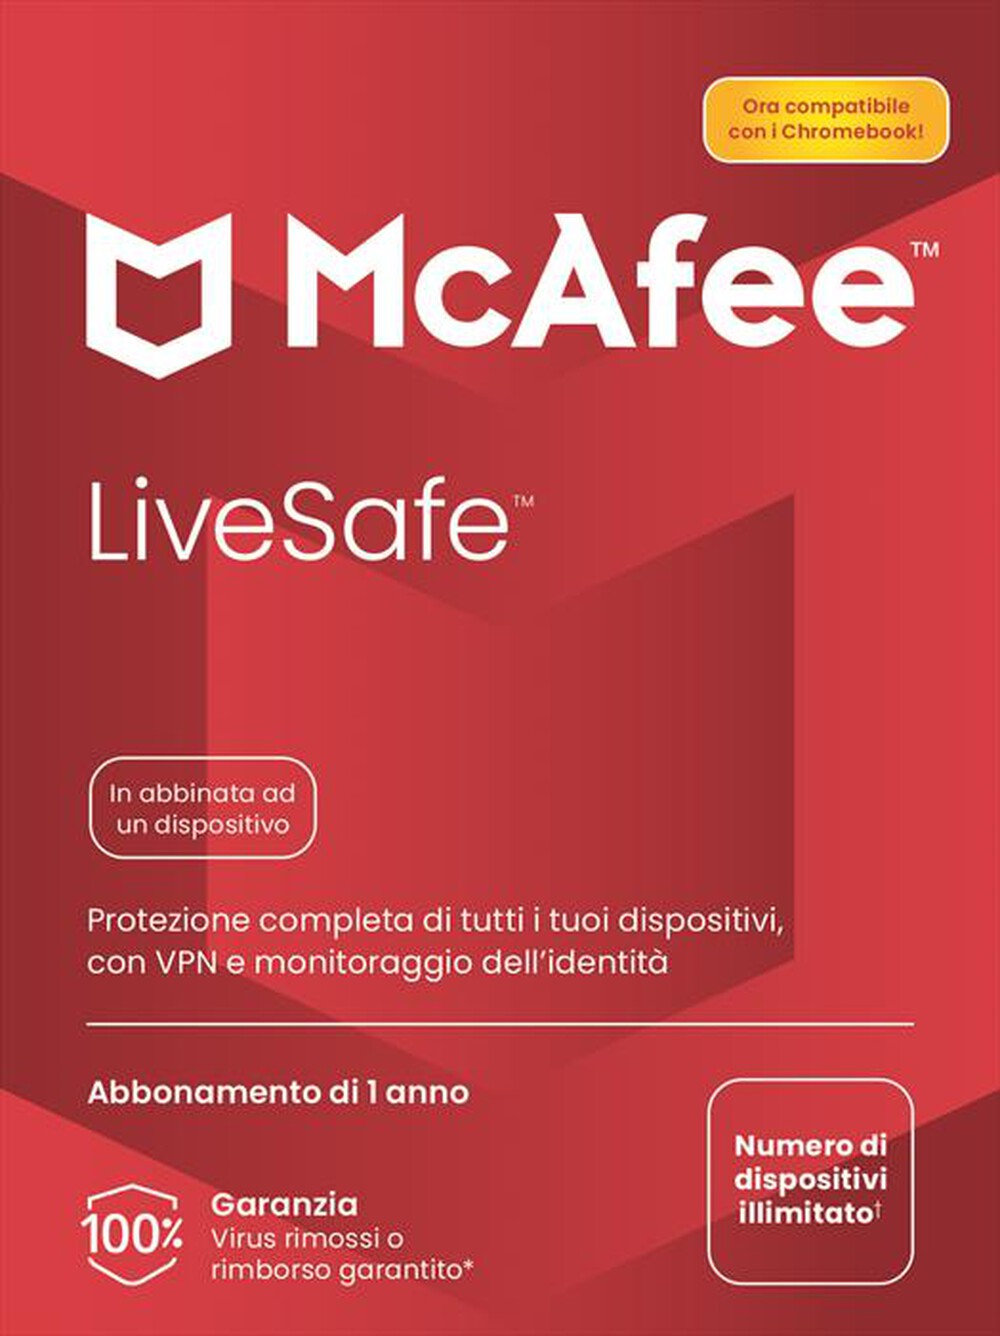 "MCAFEE - LiveSafe"